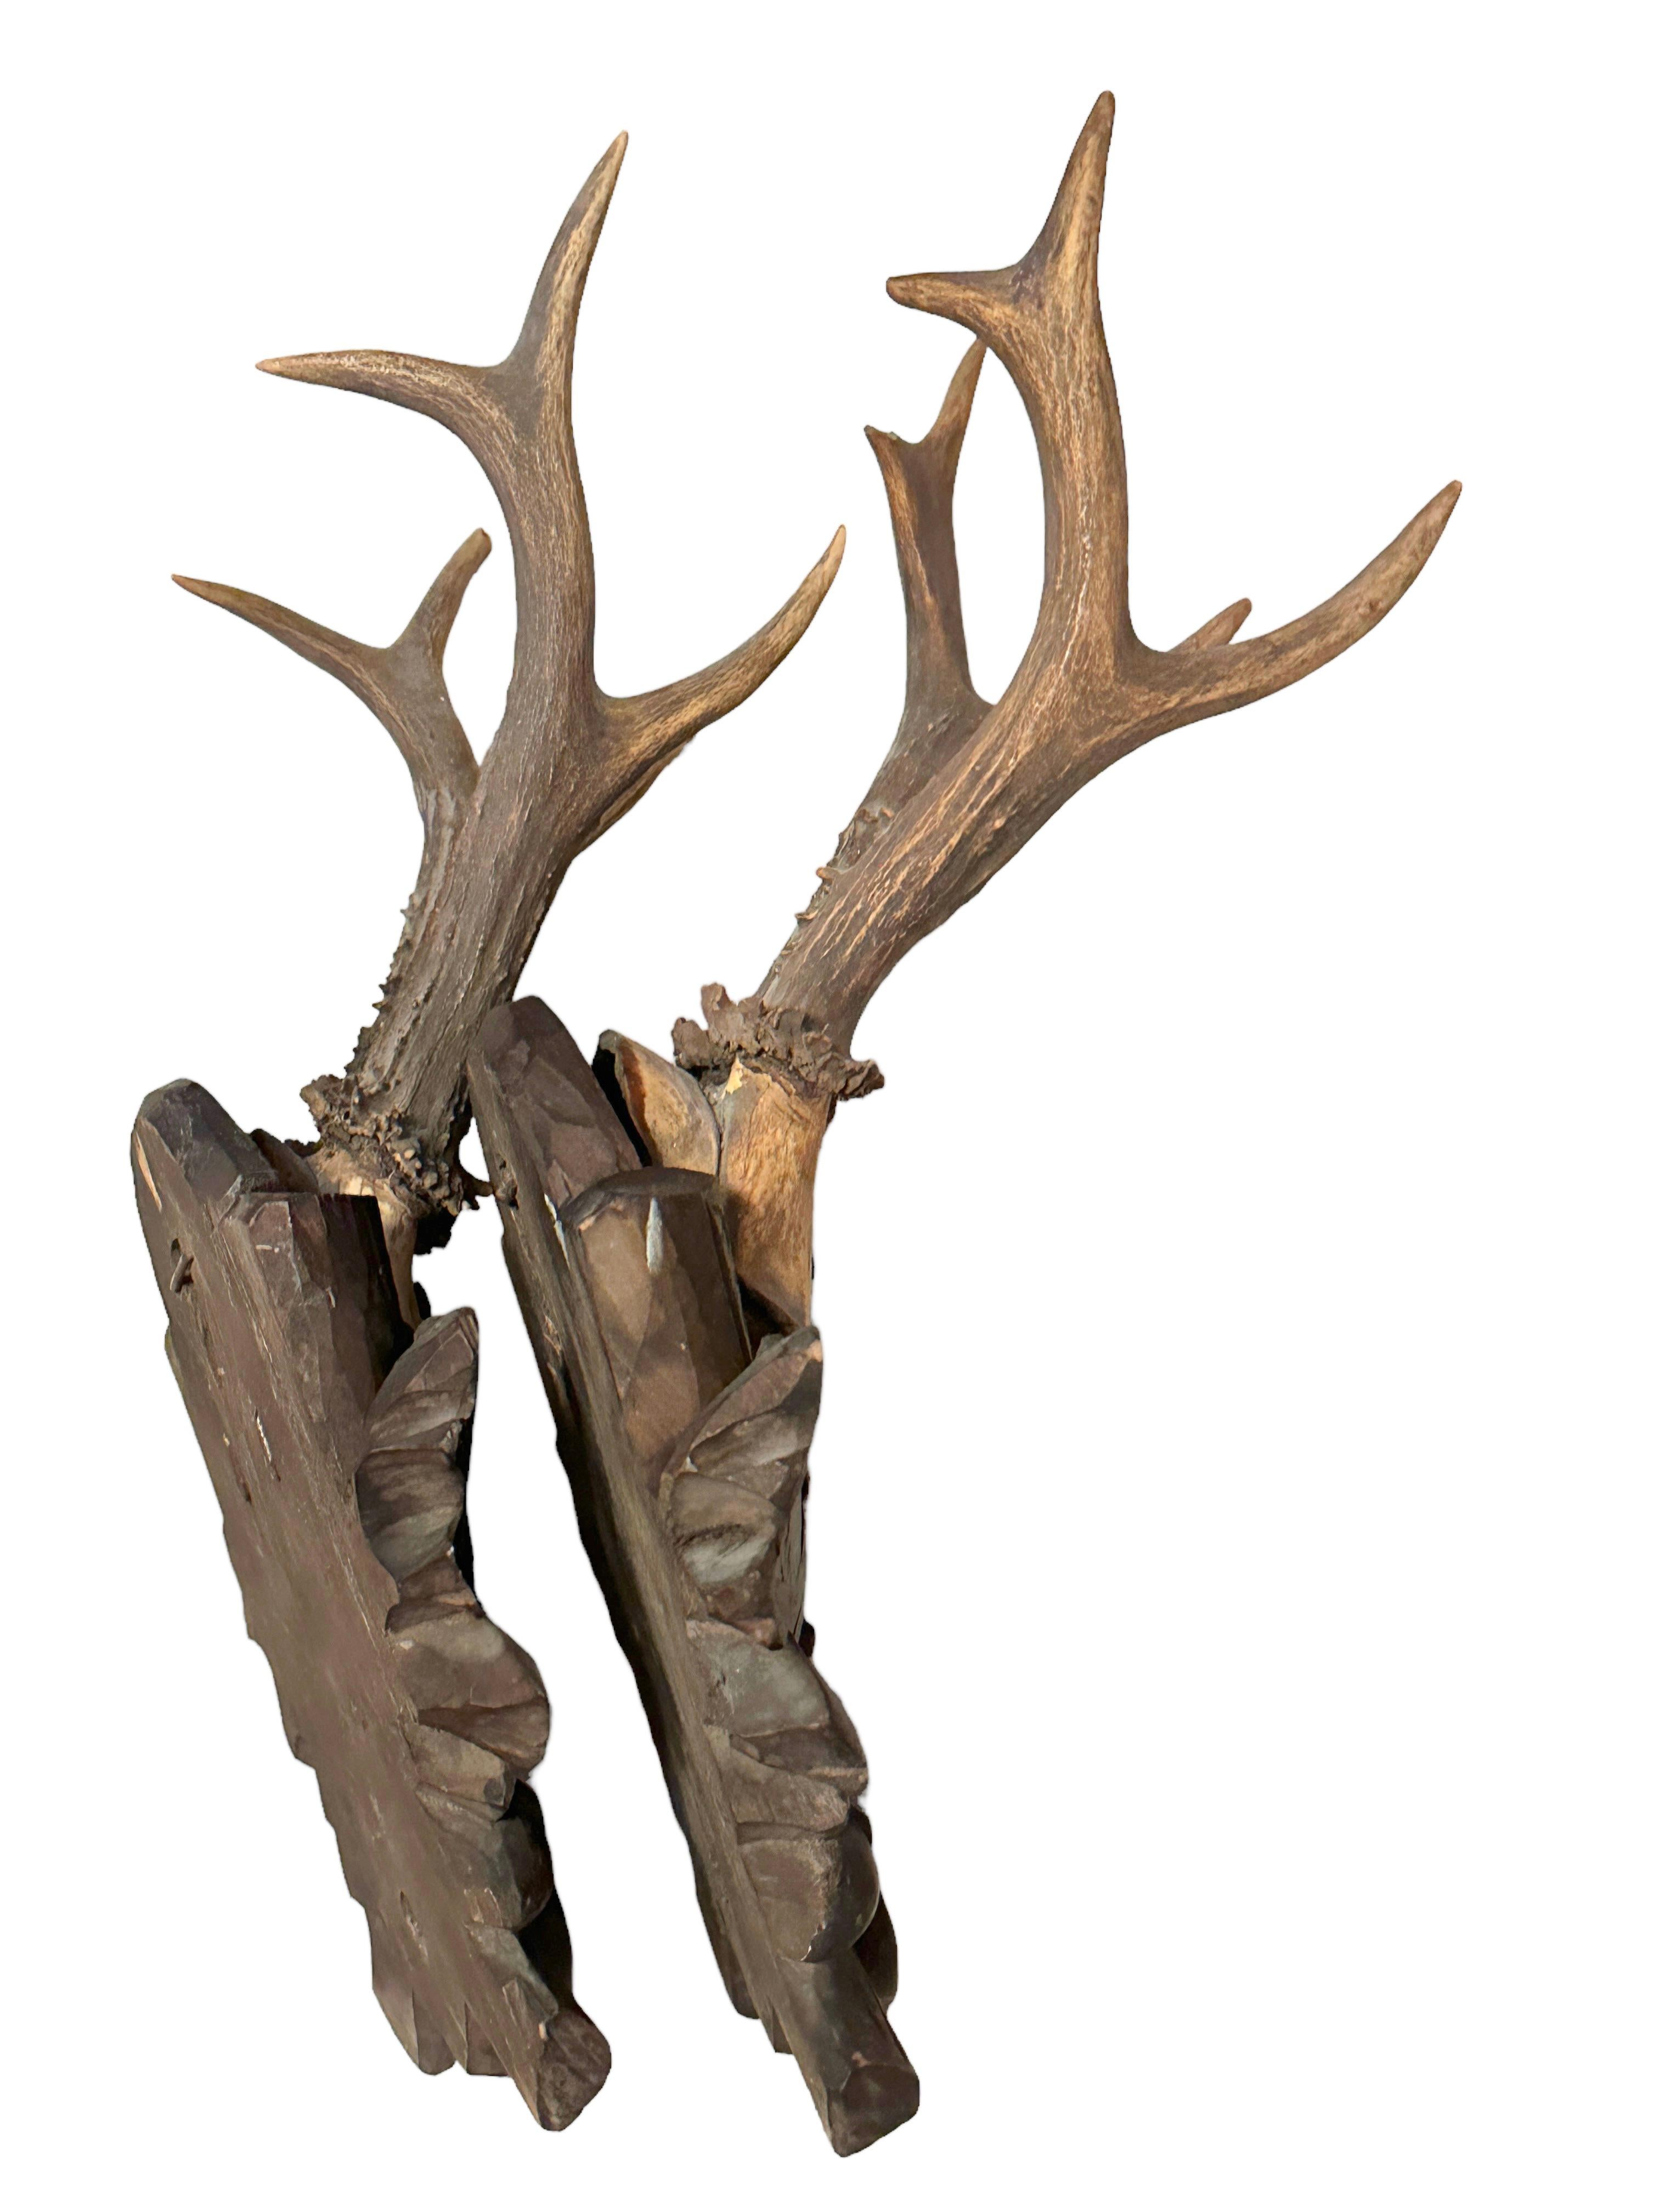 Hand-Carved Two Deer Antler Mount Trophy on Black Forest Carved Wood Plaque German Folk Art 